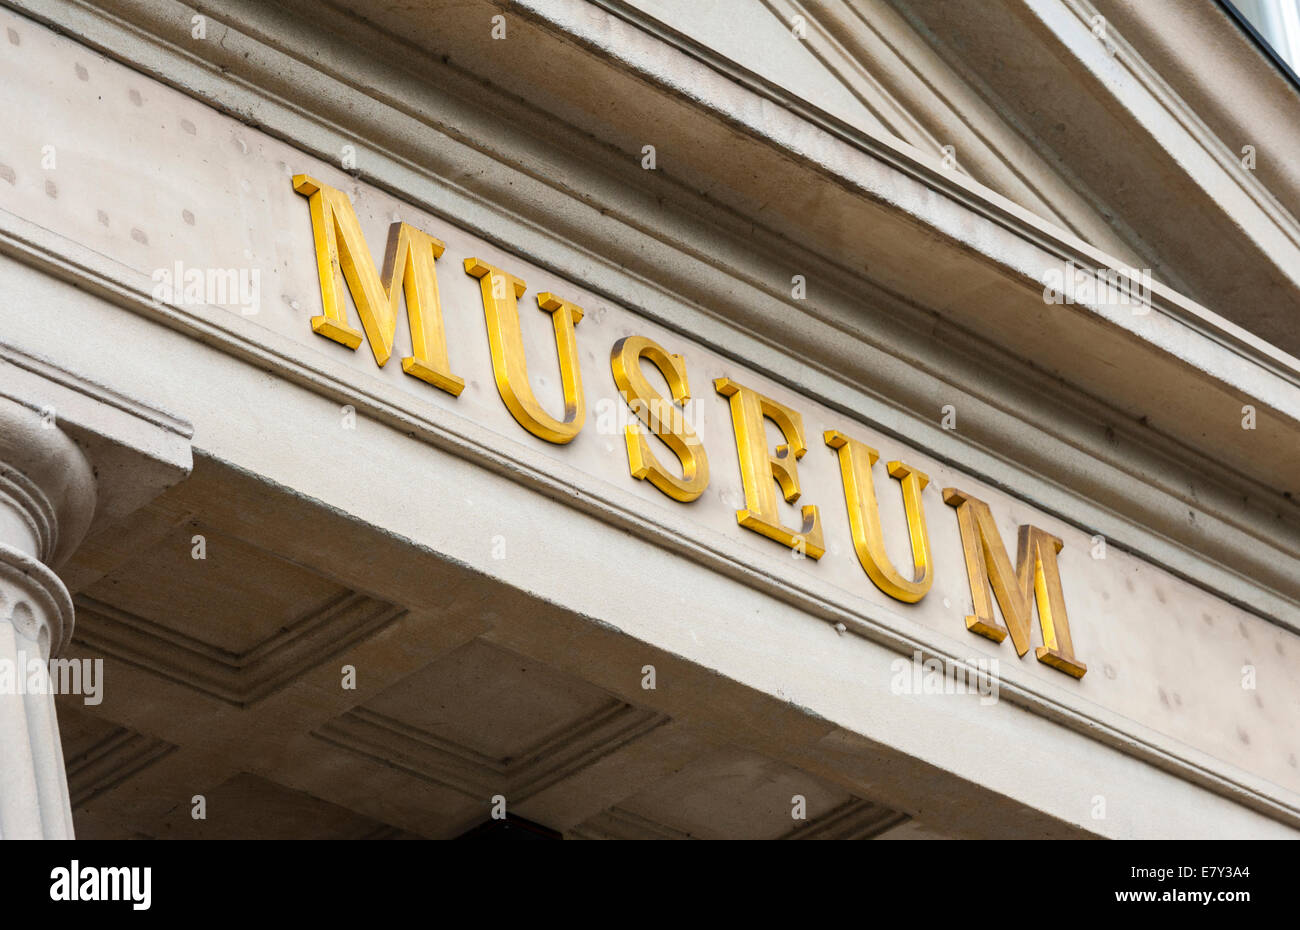 Eingangsportal zu einem Museum mit Capitol und griechischen Säulen. goldenen Buchstaben 'Museum' geschrieben am Kapitol. Stockfoto